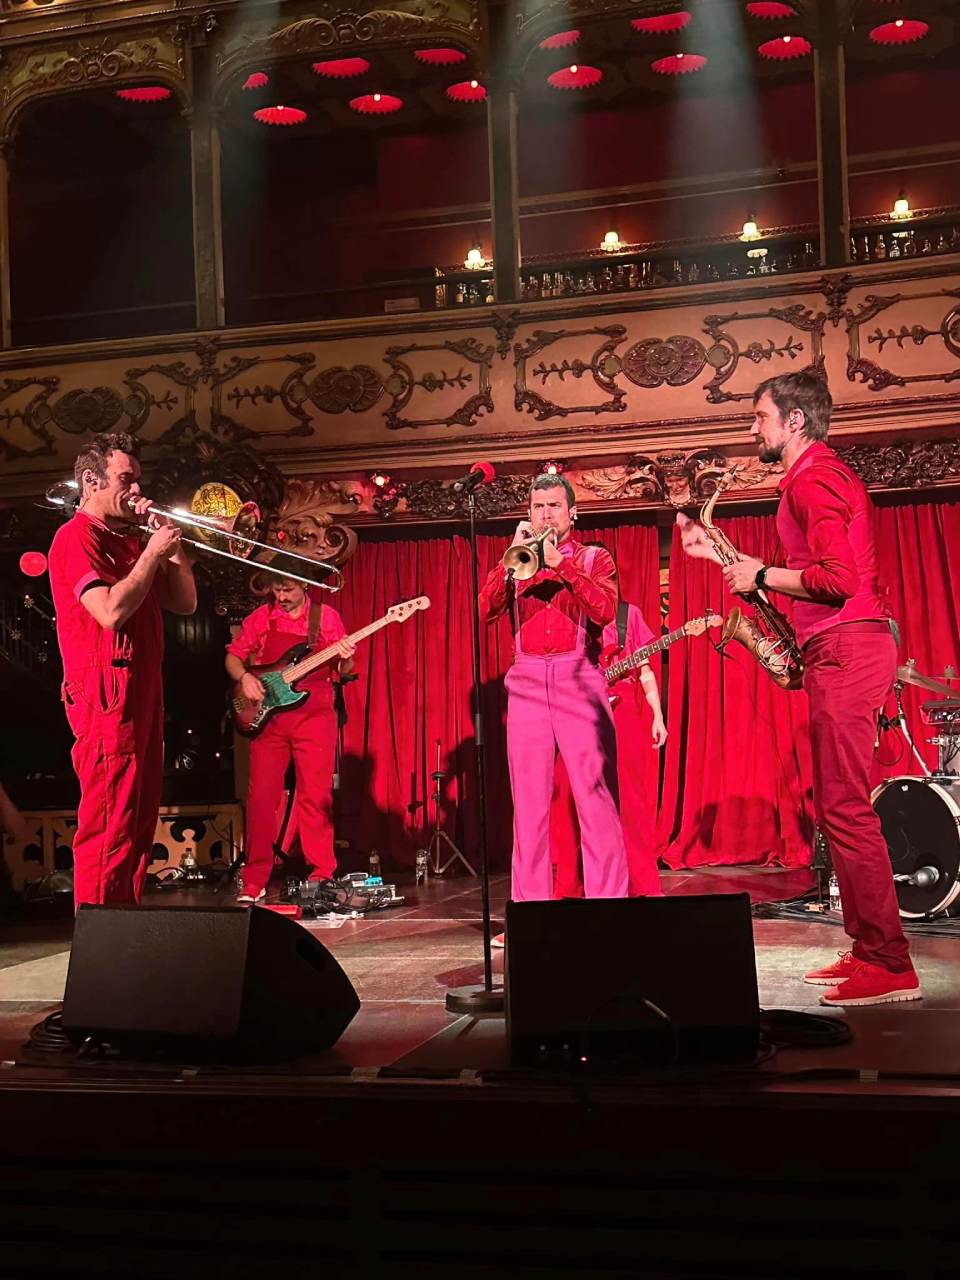 Músicos vestidos de rojo tocan en un teatro